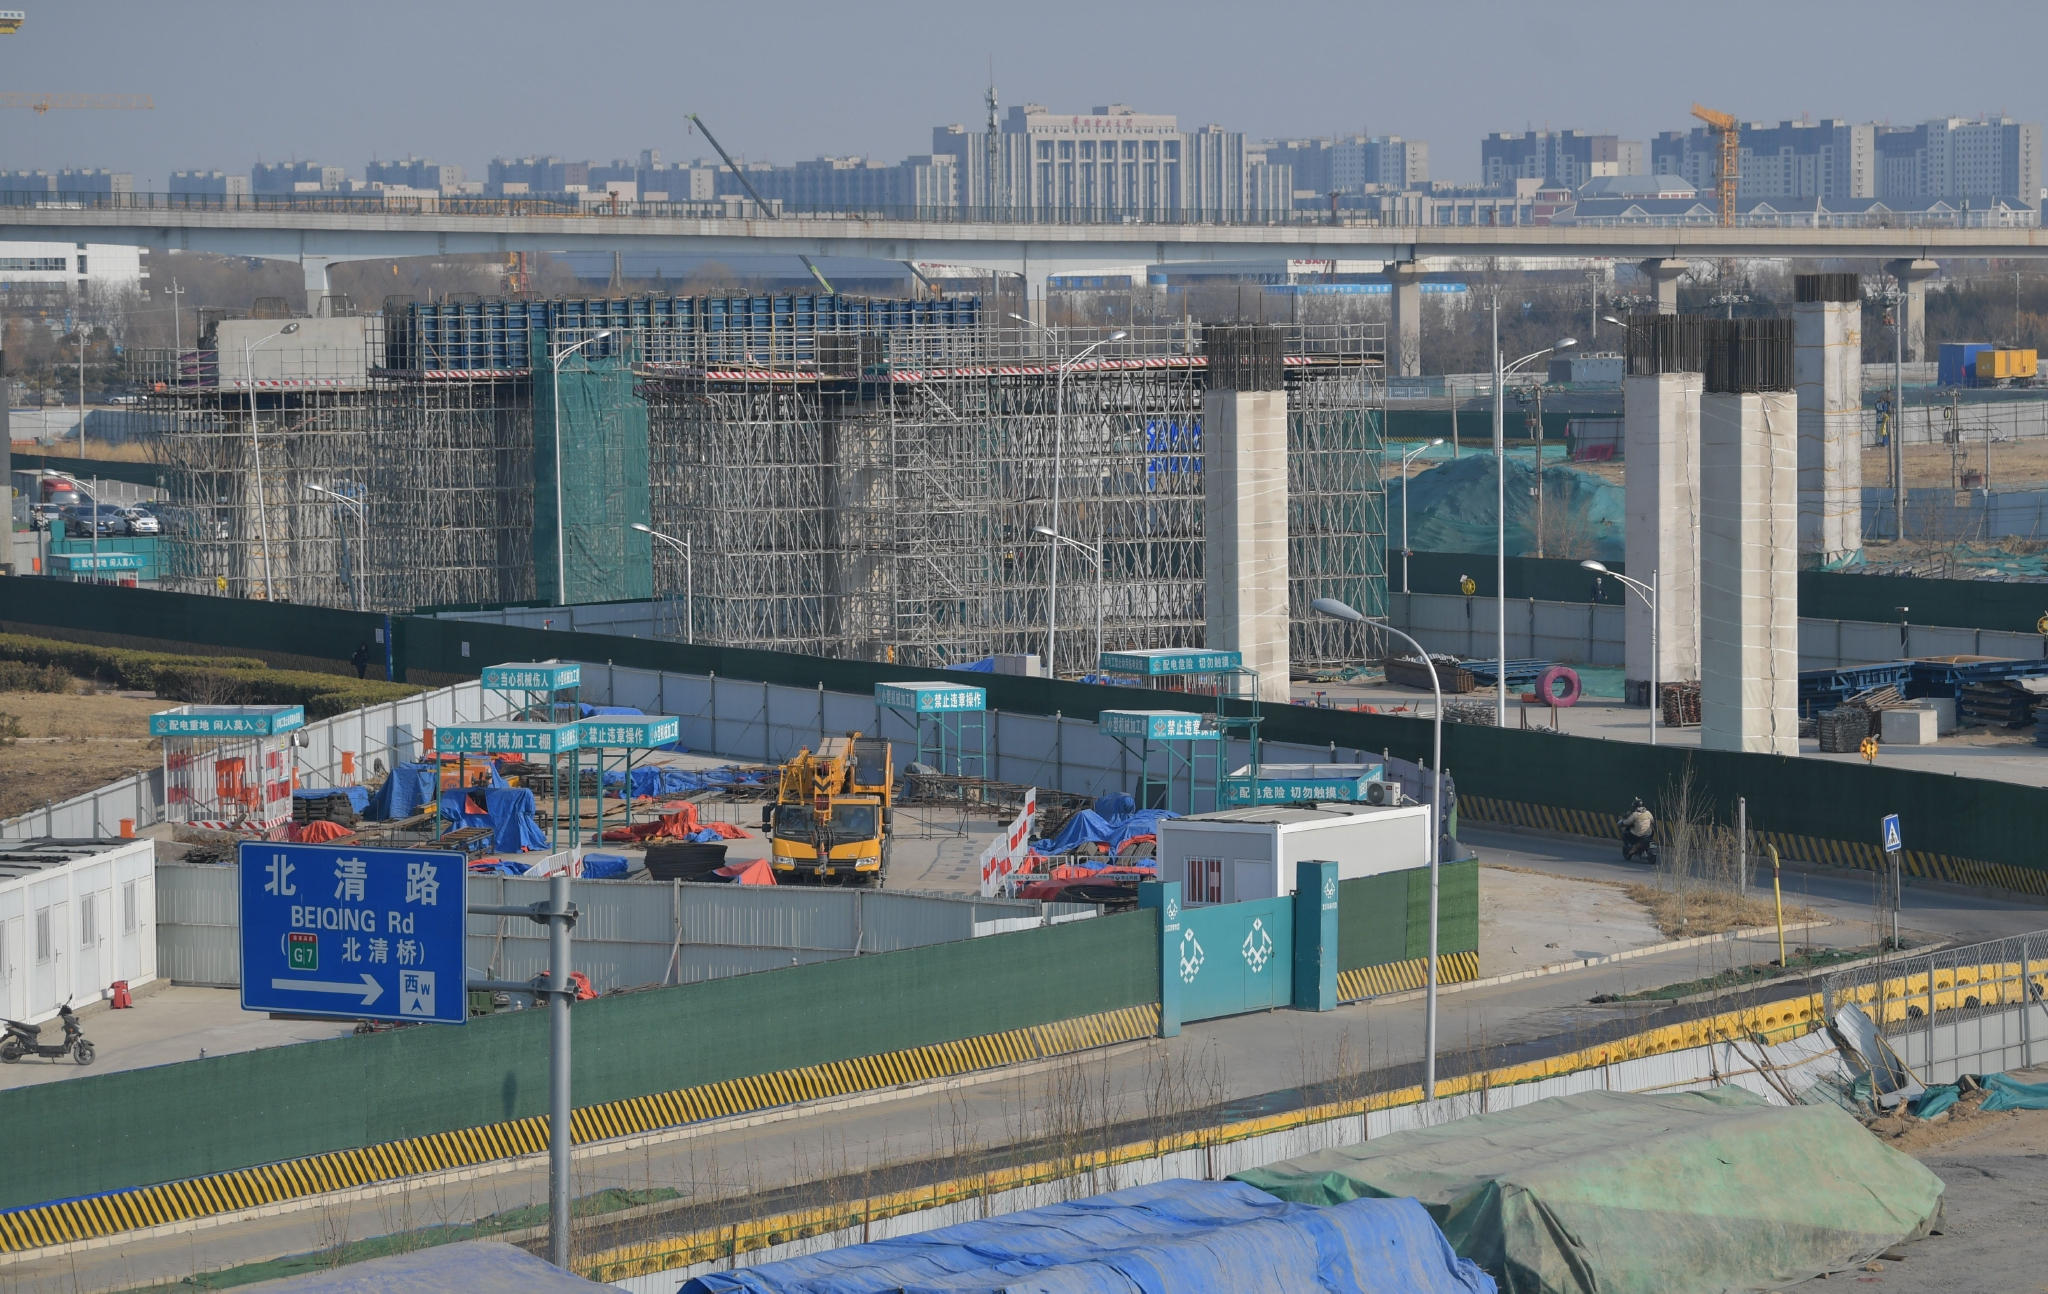 目前北清路快速化改造工程1标段正在进行主线桥梁与京新立交匝道的上部结构施工。新京报记者 李木易 摄